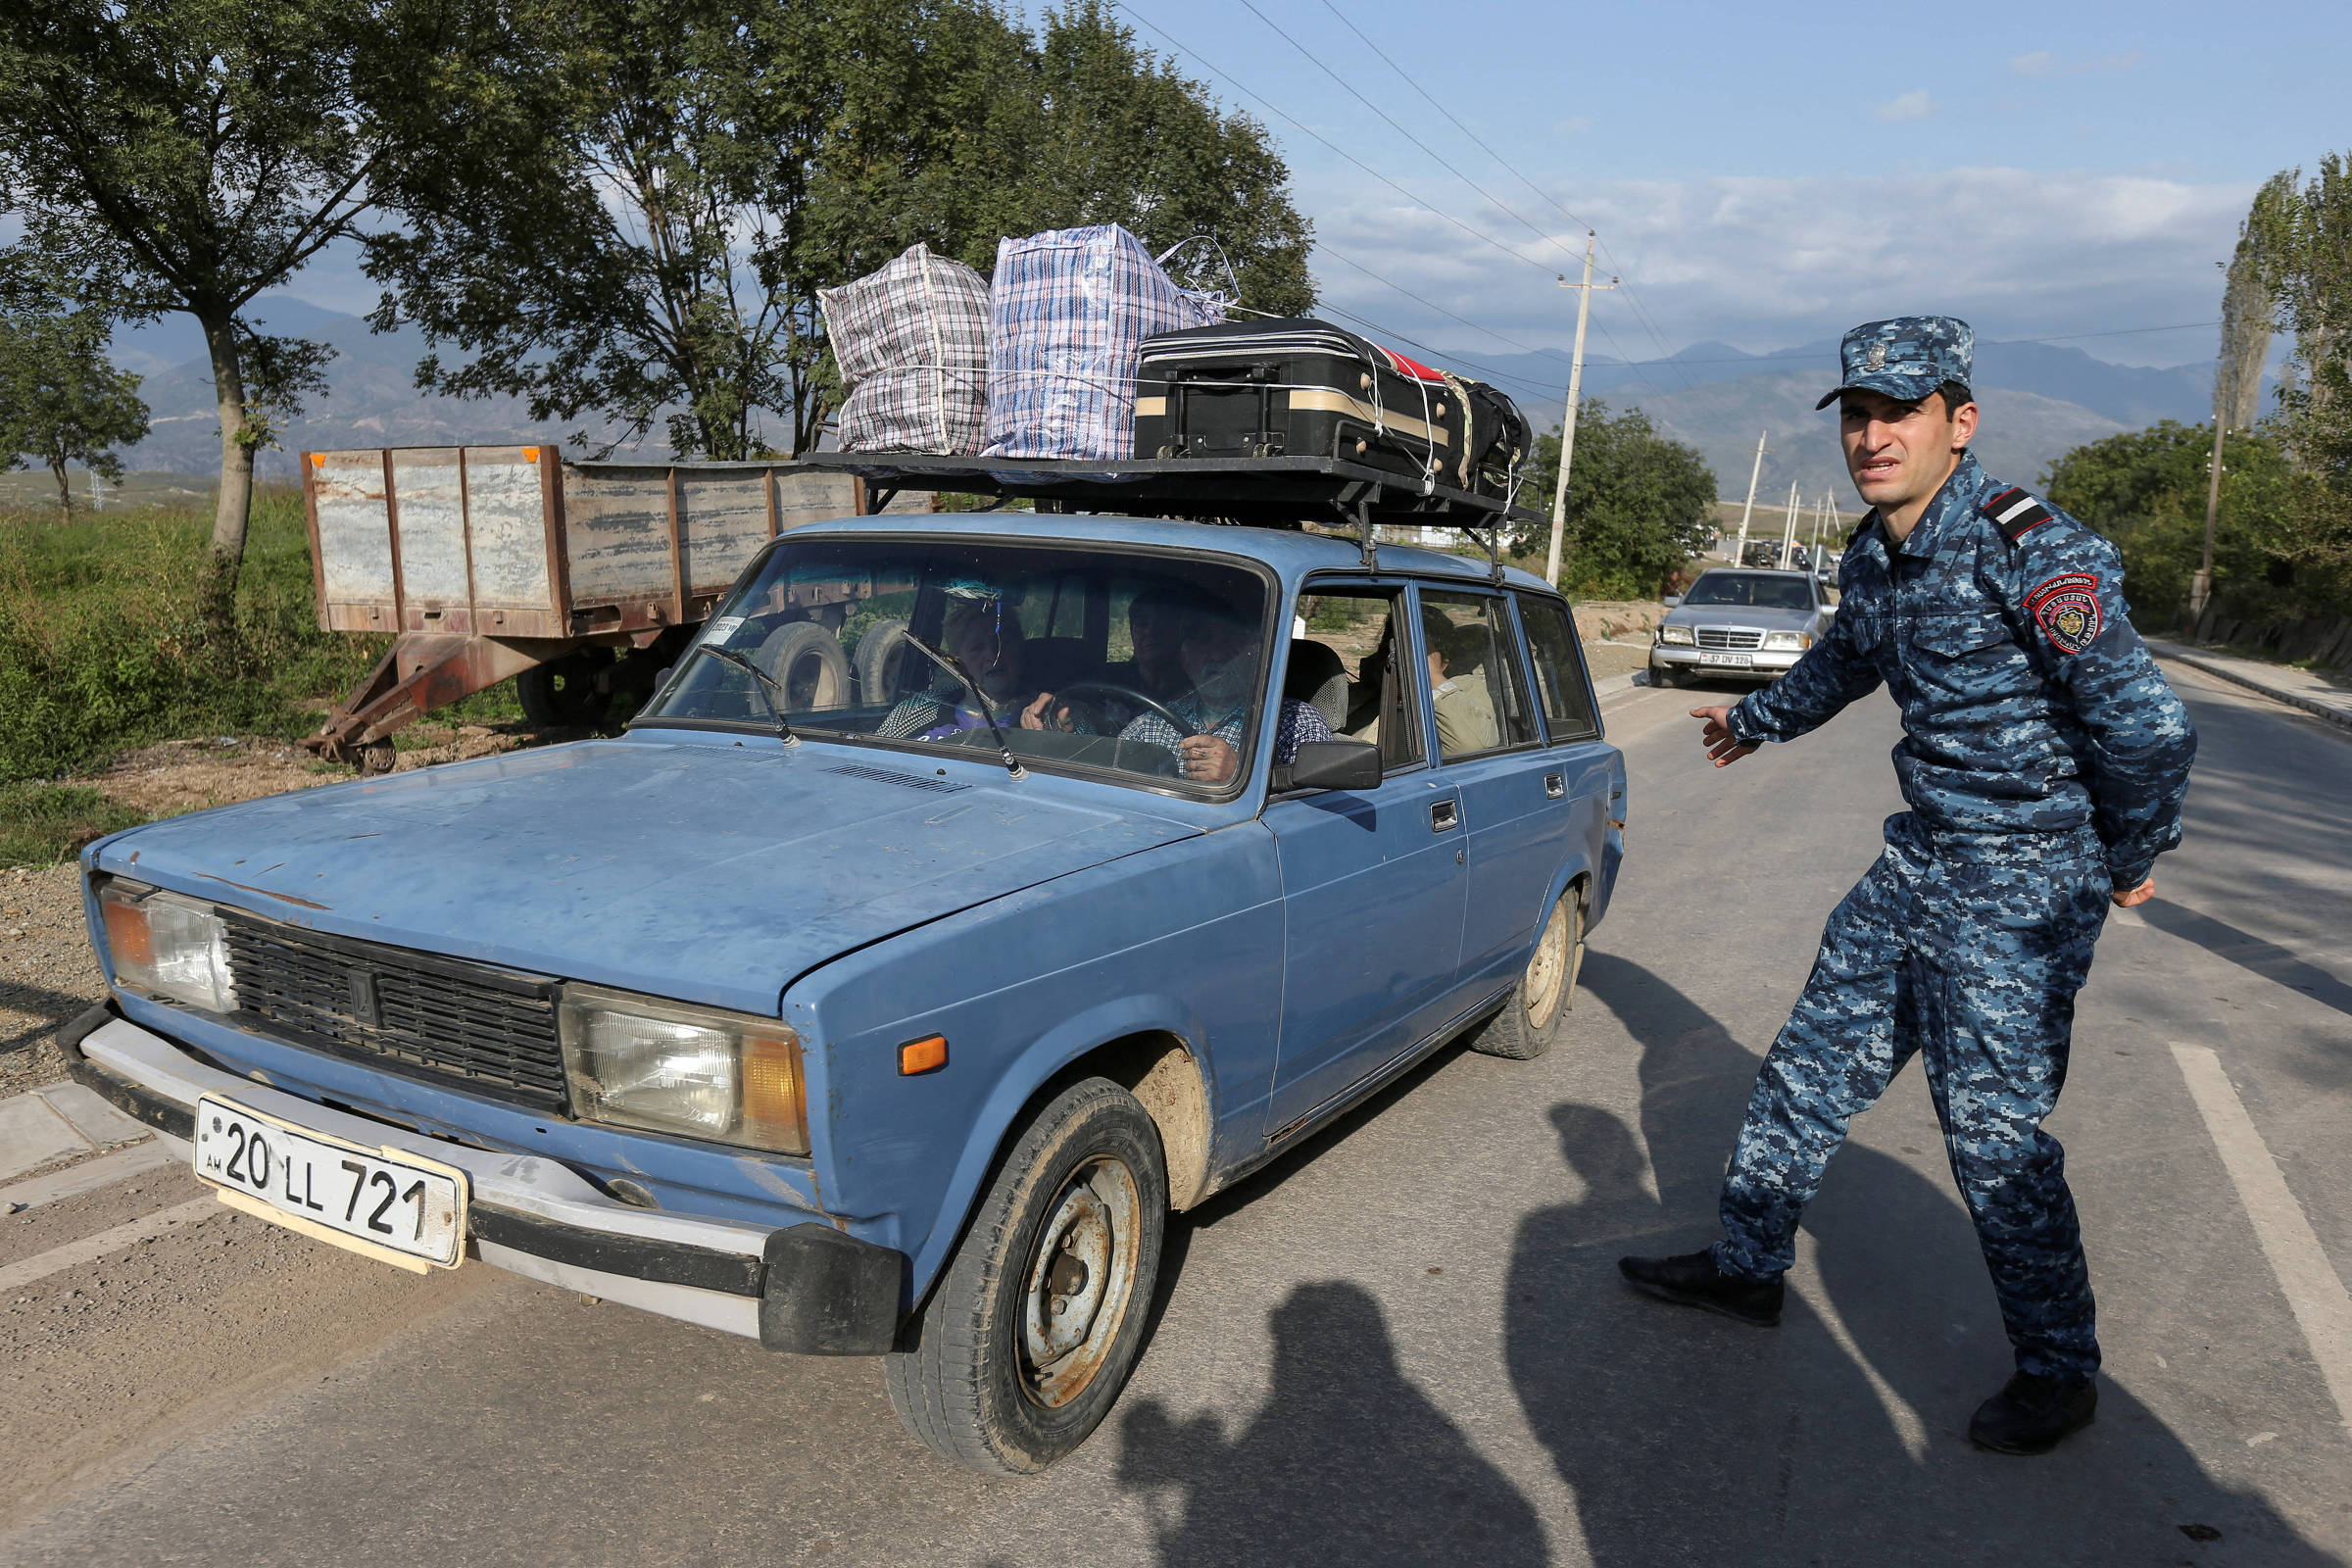 Aumentam as vítimas dos confrontos na fronteira entre Azerbaijão e Armênia  - Vatican News